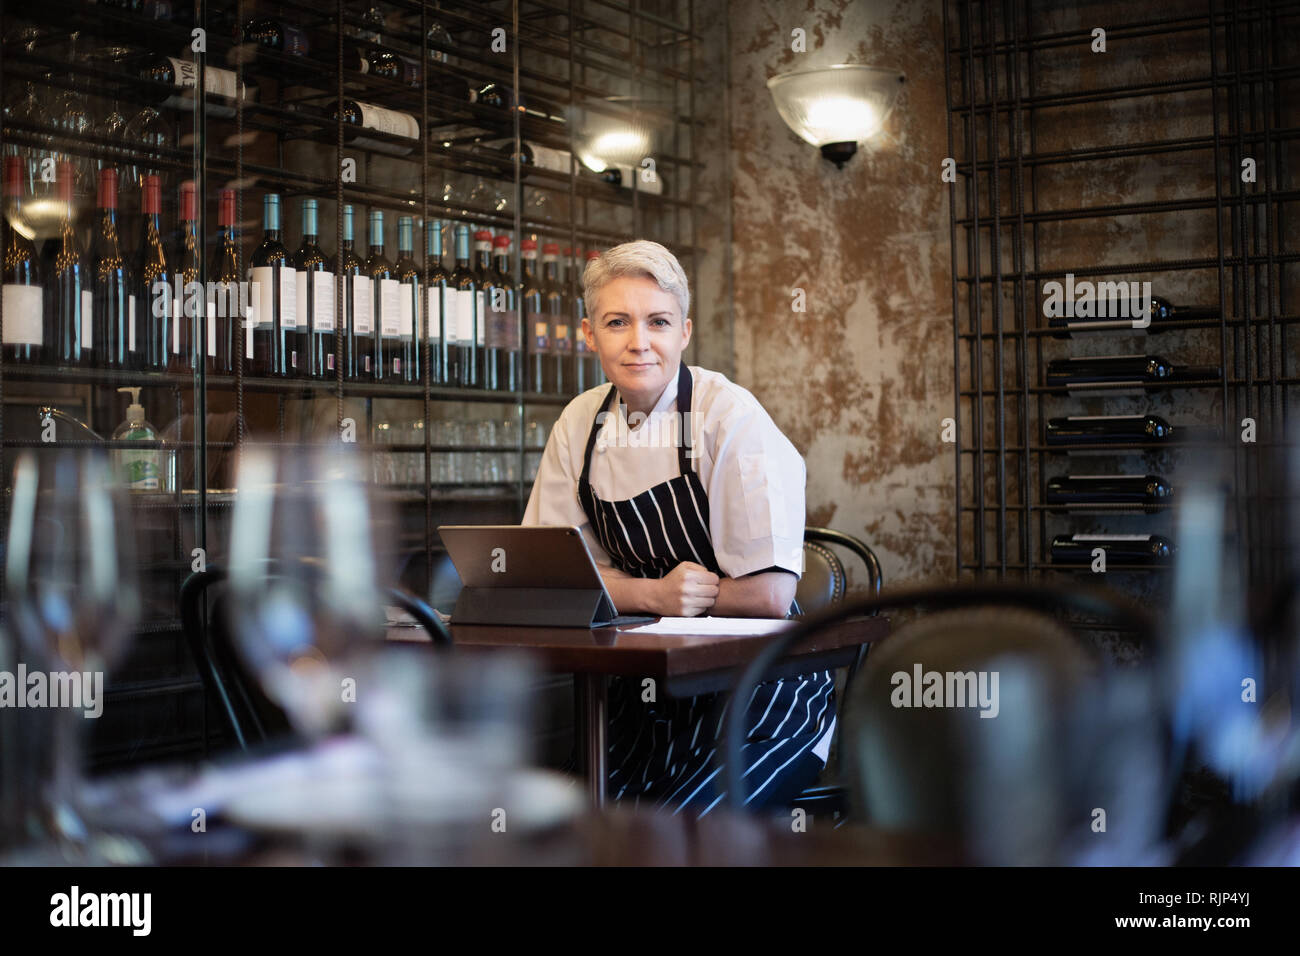 Portrait de femme chef et propriétaire de restaurant Banque D'Images